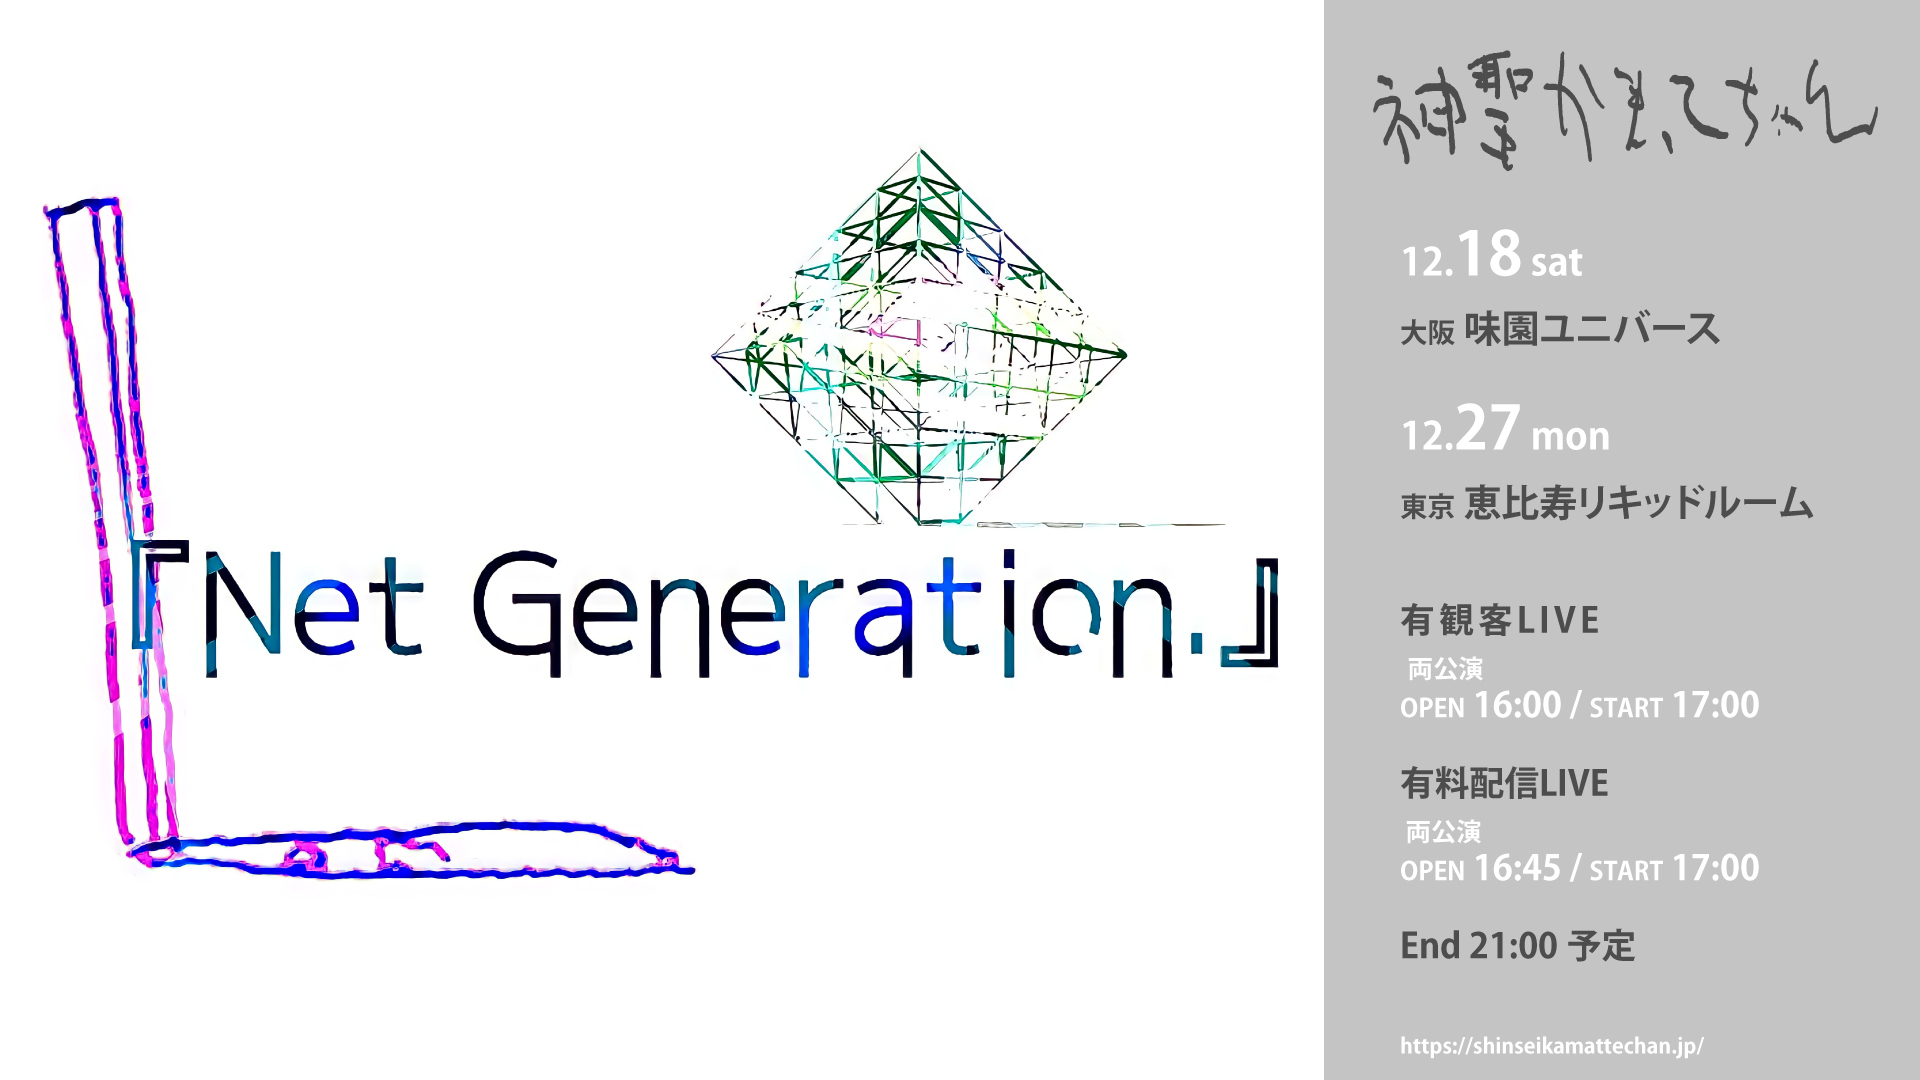 2021年の「Net Generation.」の開催が決定。